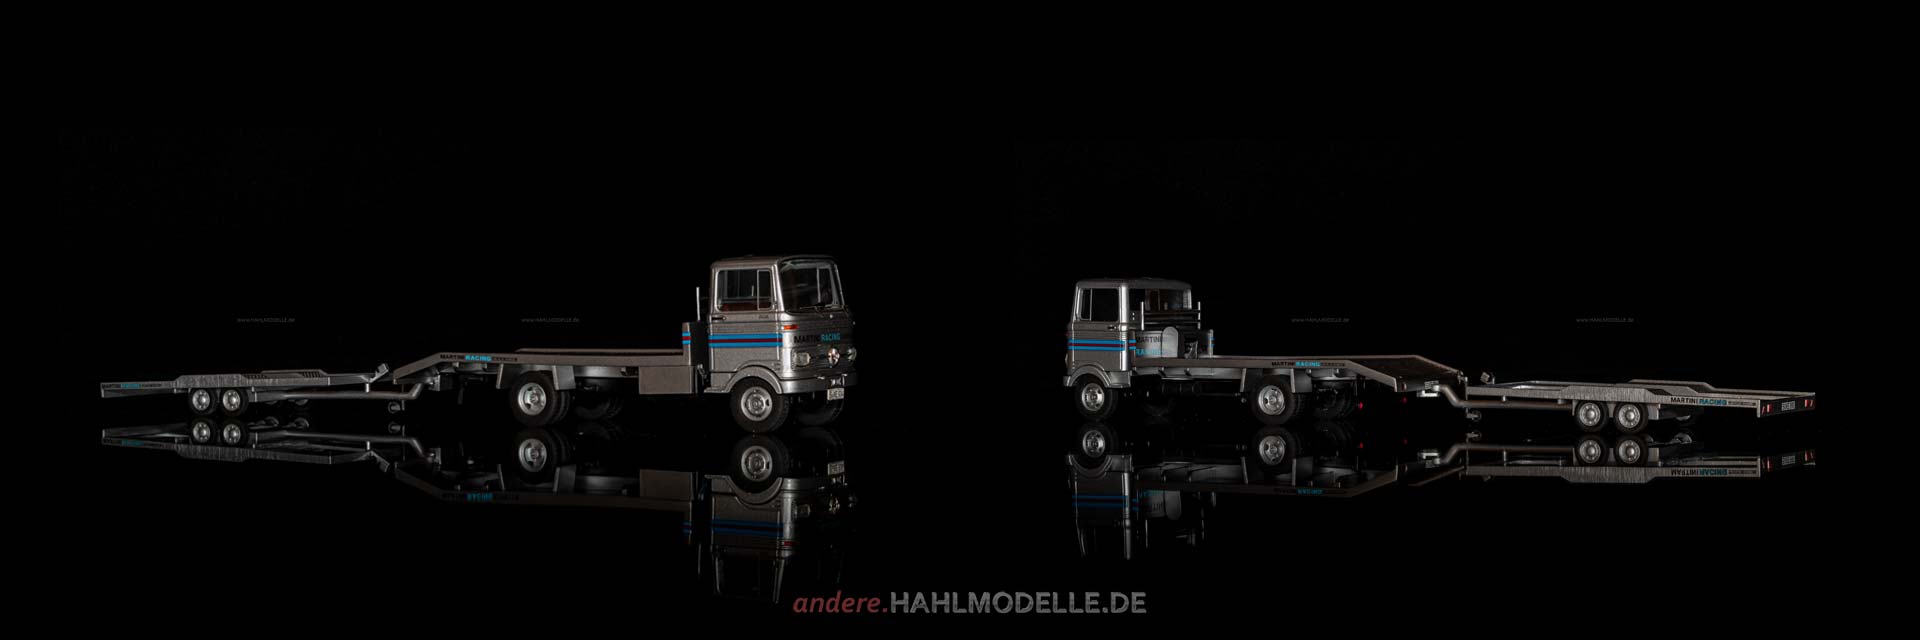 Mercedes-Benz LP 608 | Renntransporter | Premium ClassiXXs | 1:43 | www.andere.hahlmodelle.de